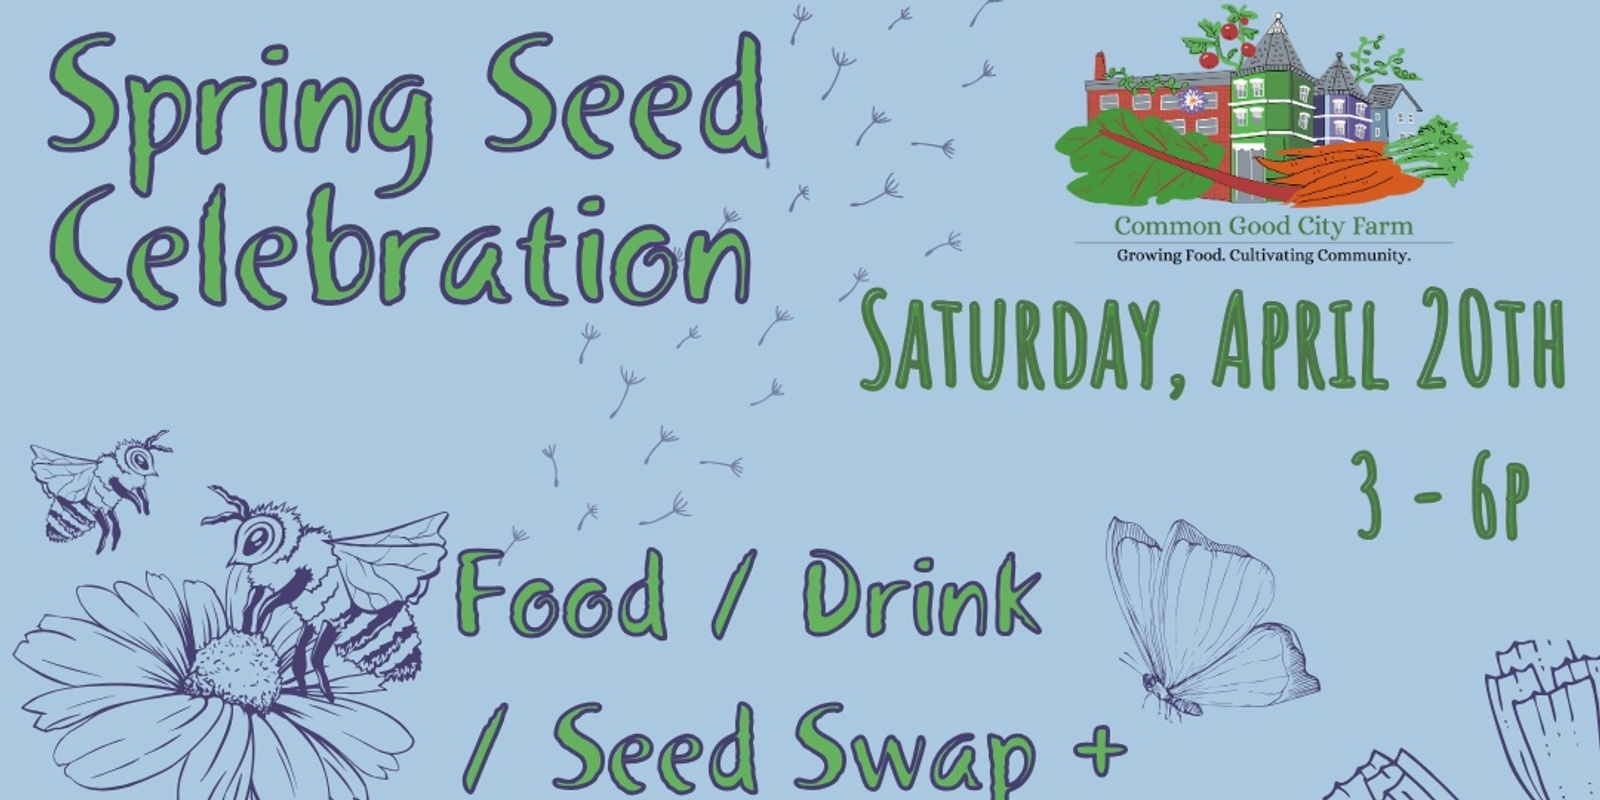 Banner image for Spring Seed Celebration